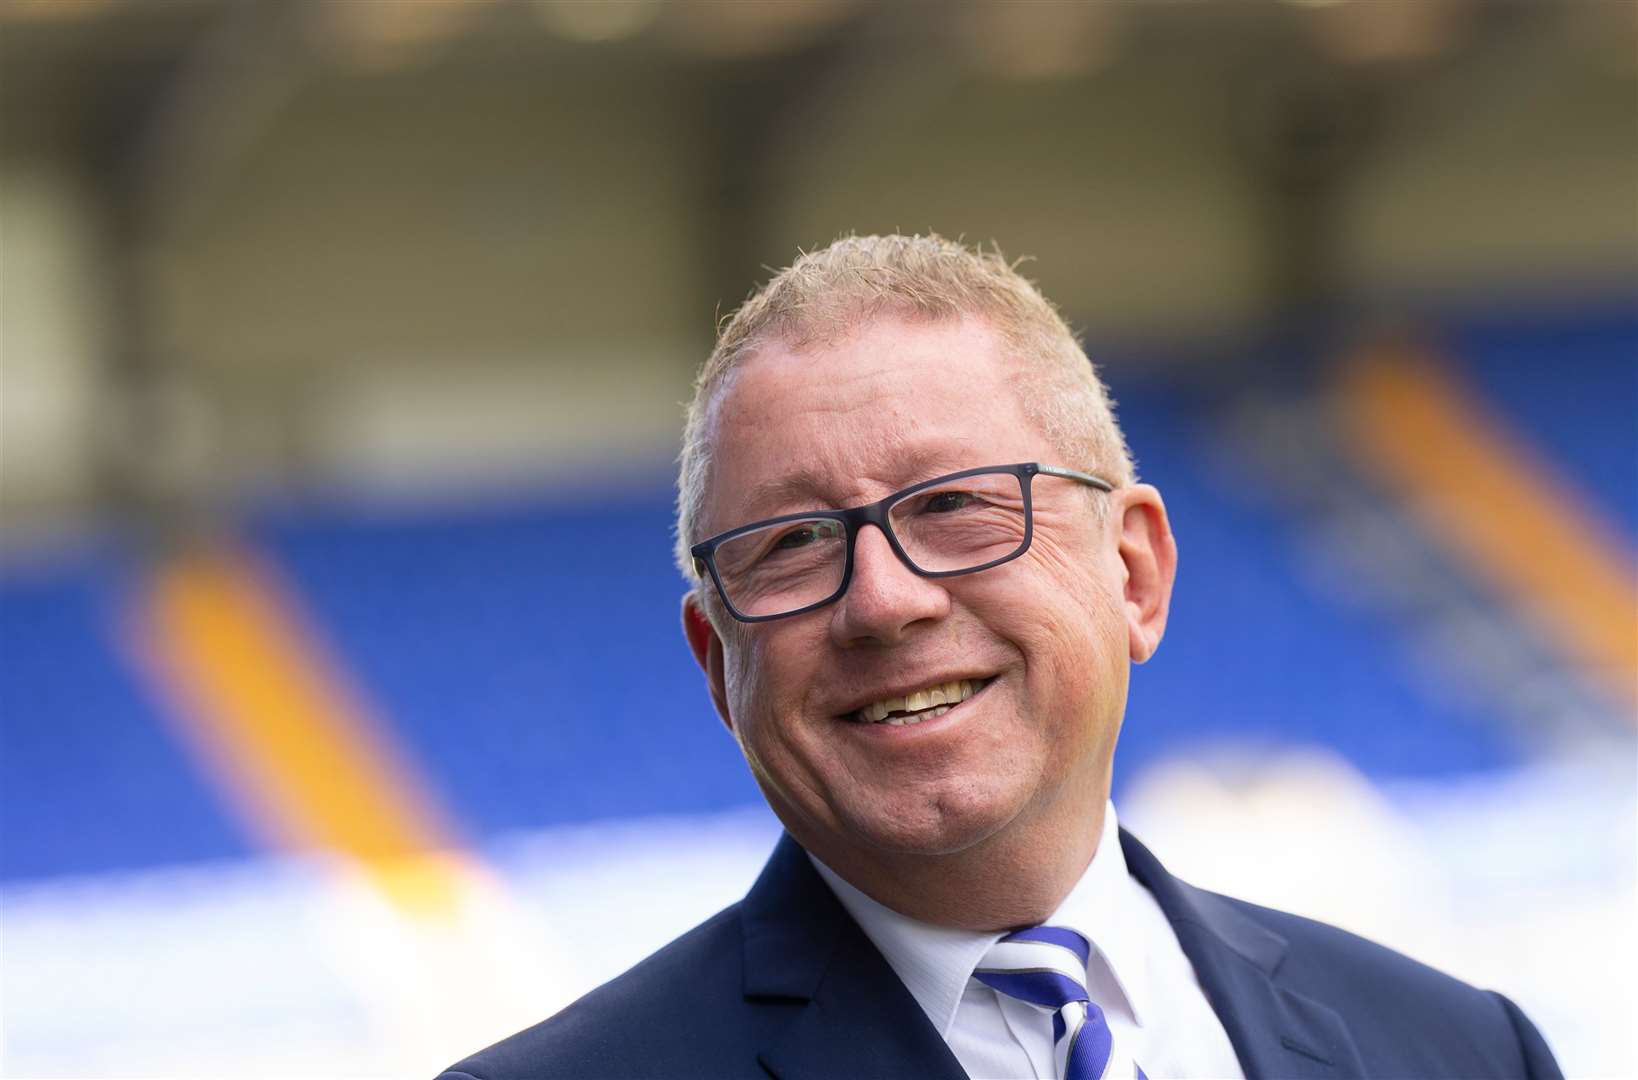 Gillingham chairman Paul Scally has written an open letter to fans